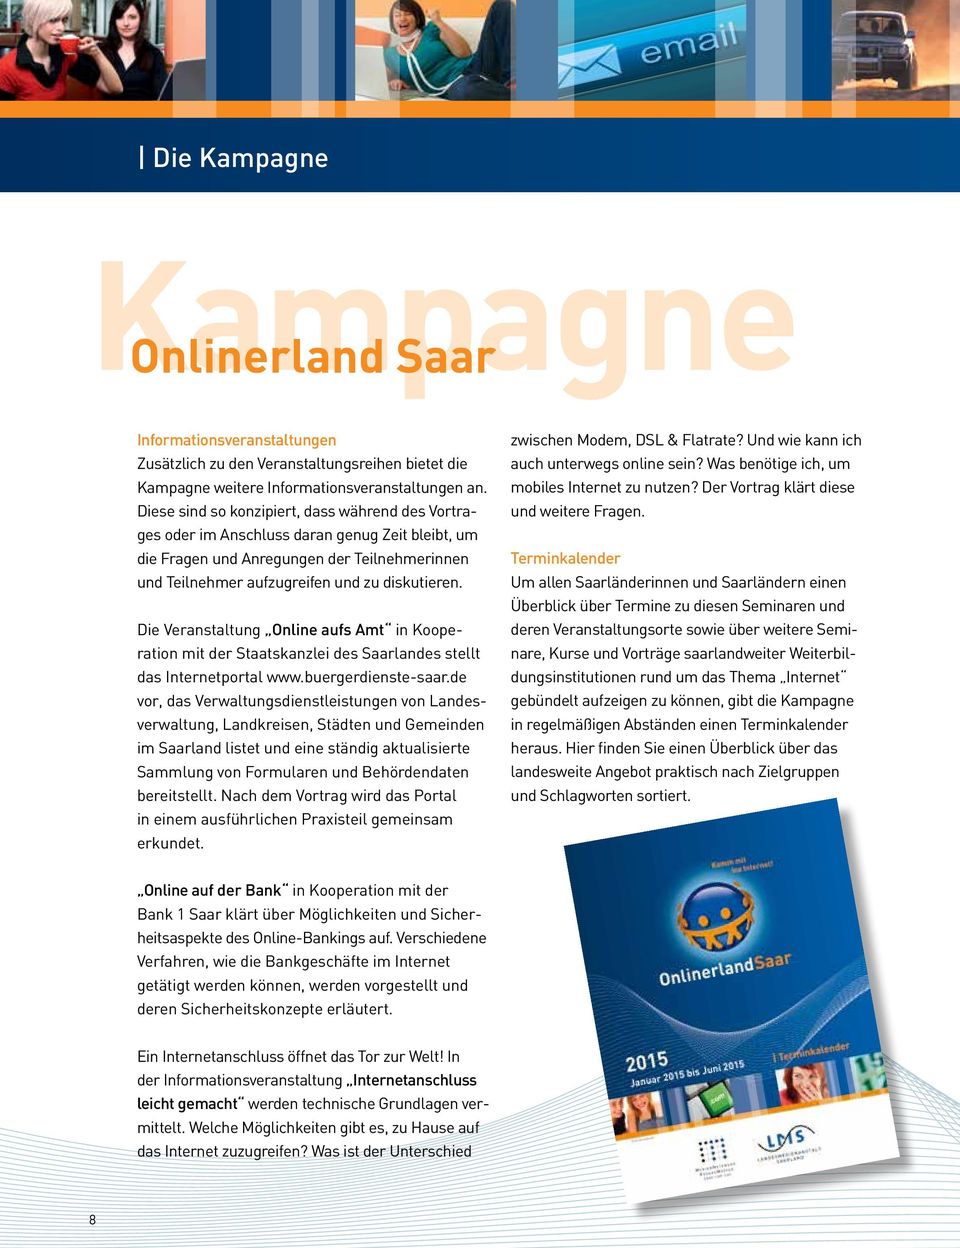 Die Veranstaltung Online aufs Amt in Kooperation mit der Staatskanzlei des Saarlandes stellt das Internetportal www.buergerdienste-saar.